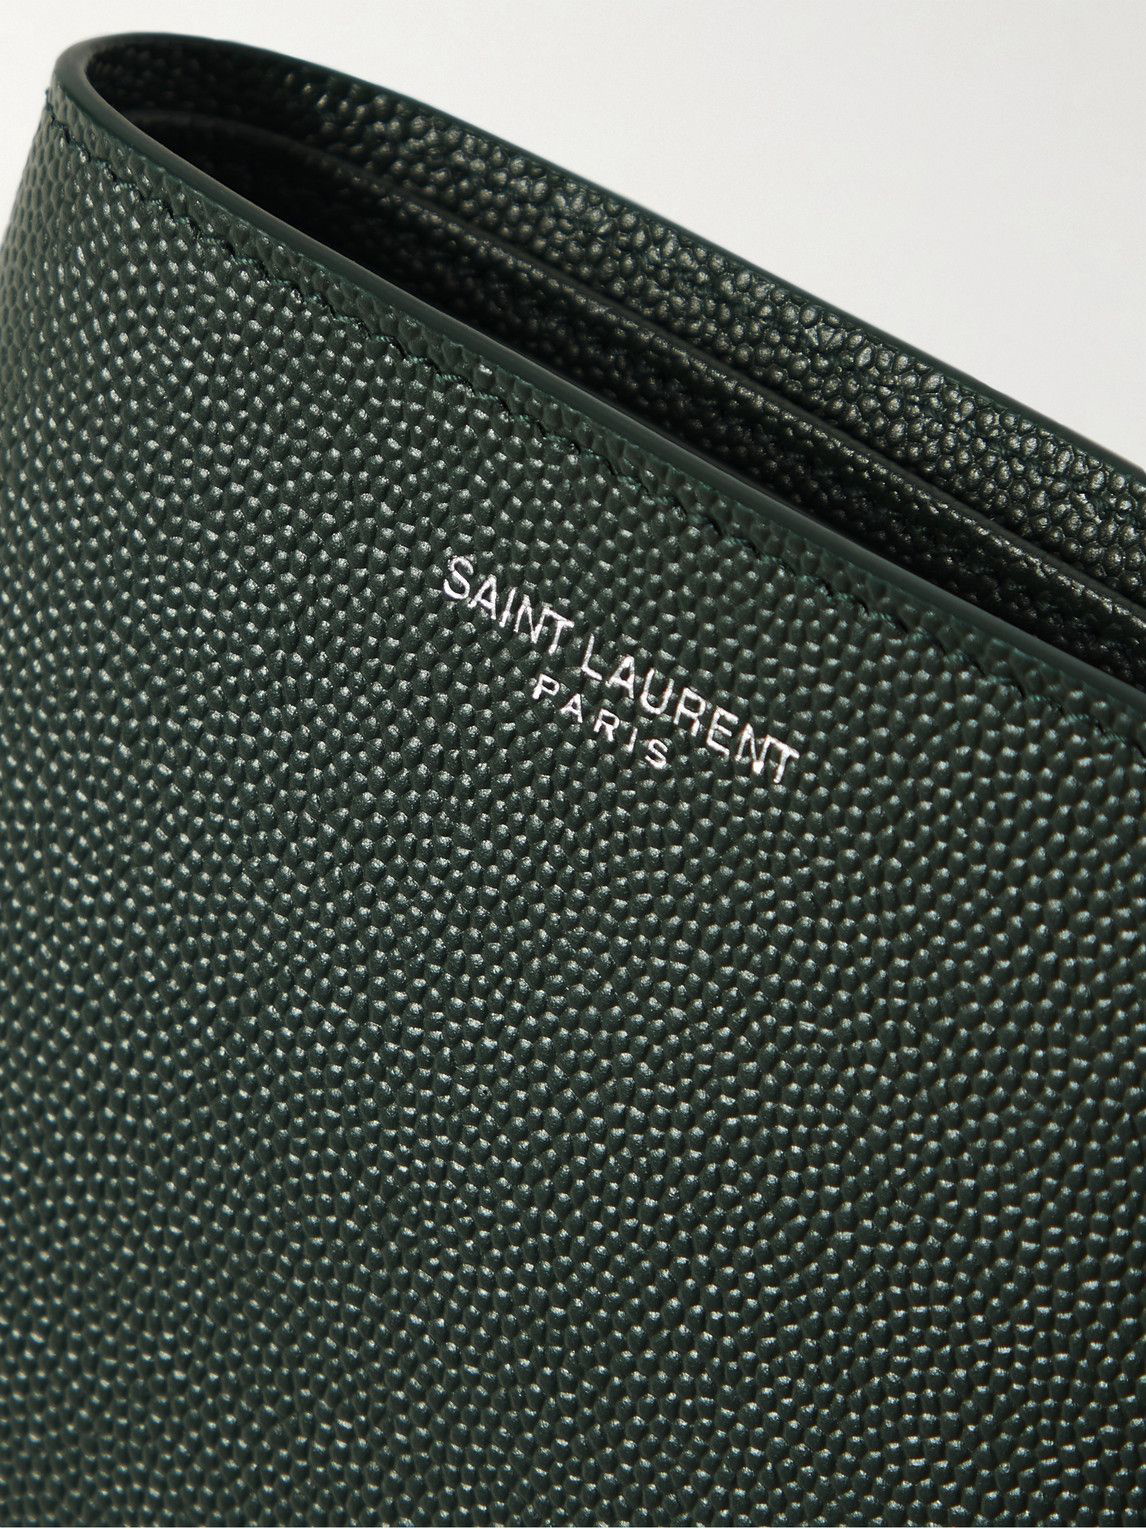 SAINT LAURENT Logo-Appliquéd Pebble-Grain Leather Cardholder for Men